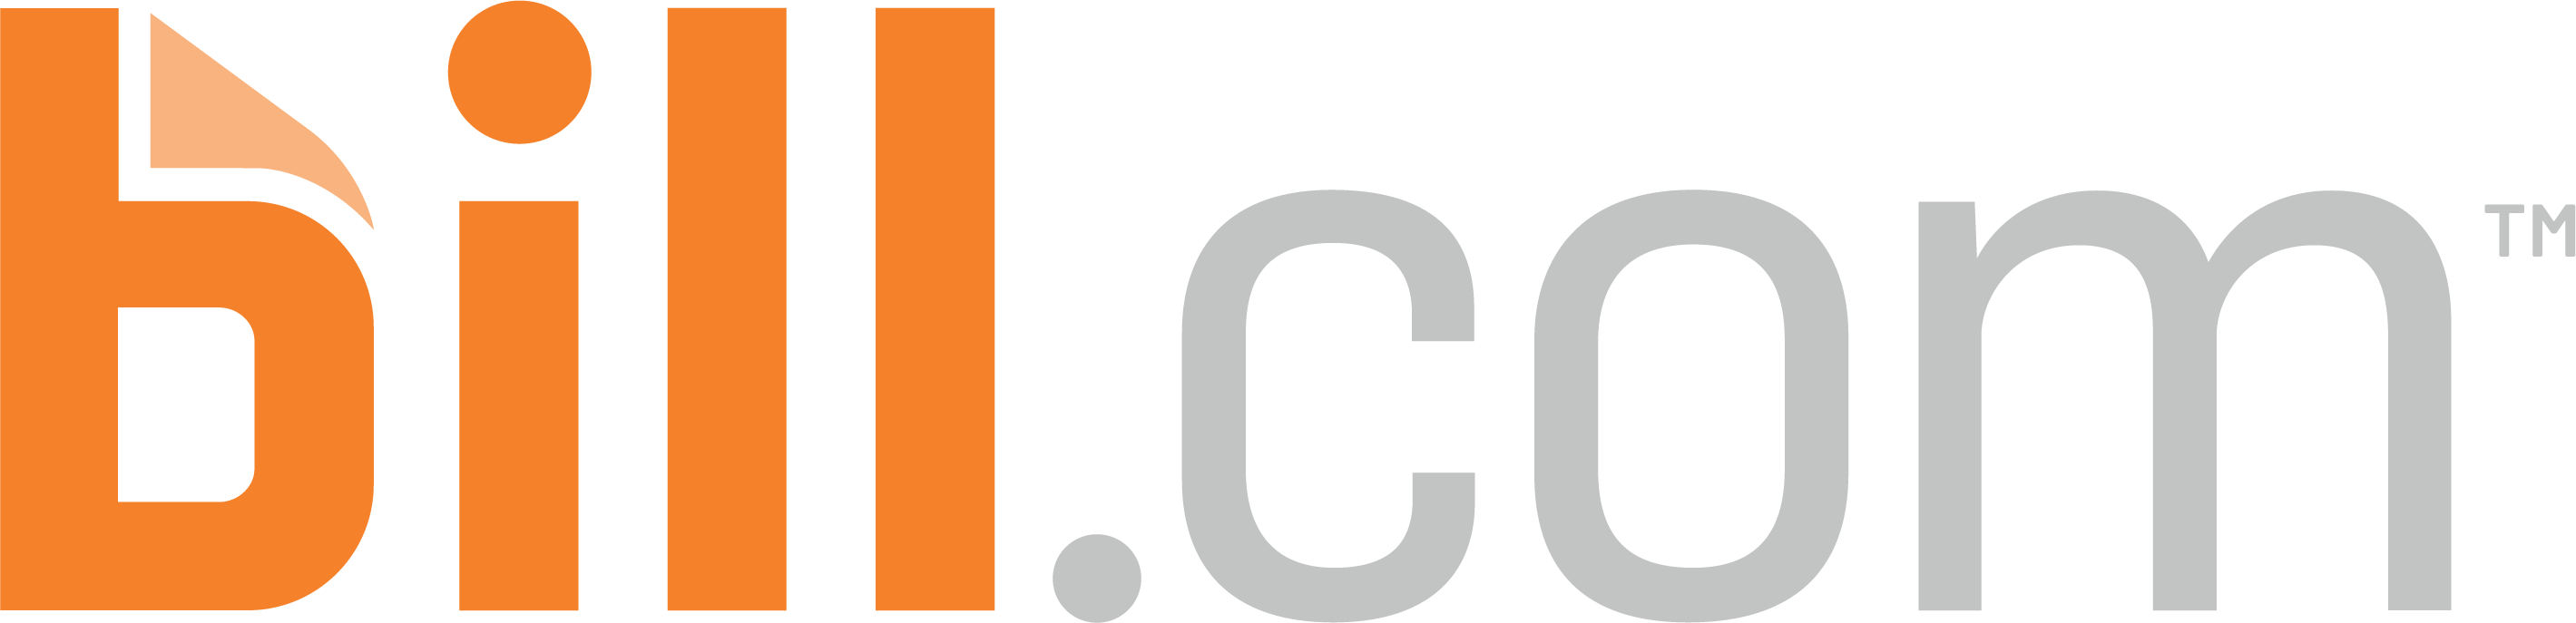 Bill.com_Logo_2019